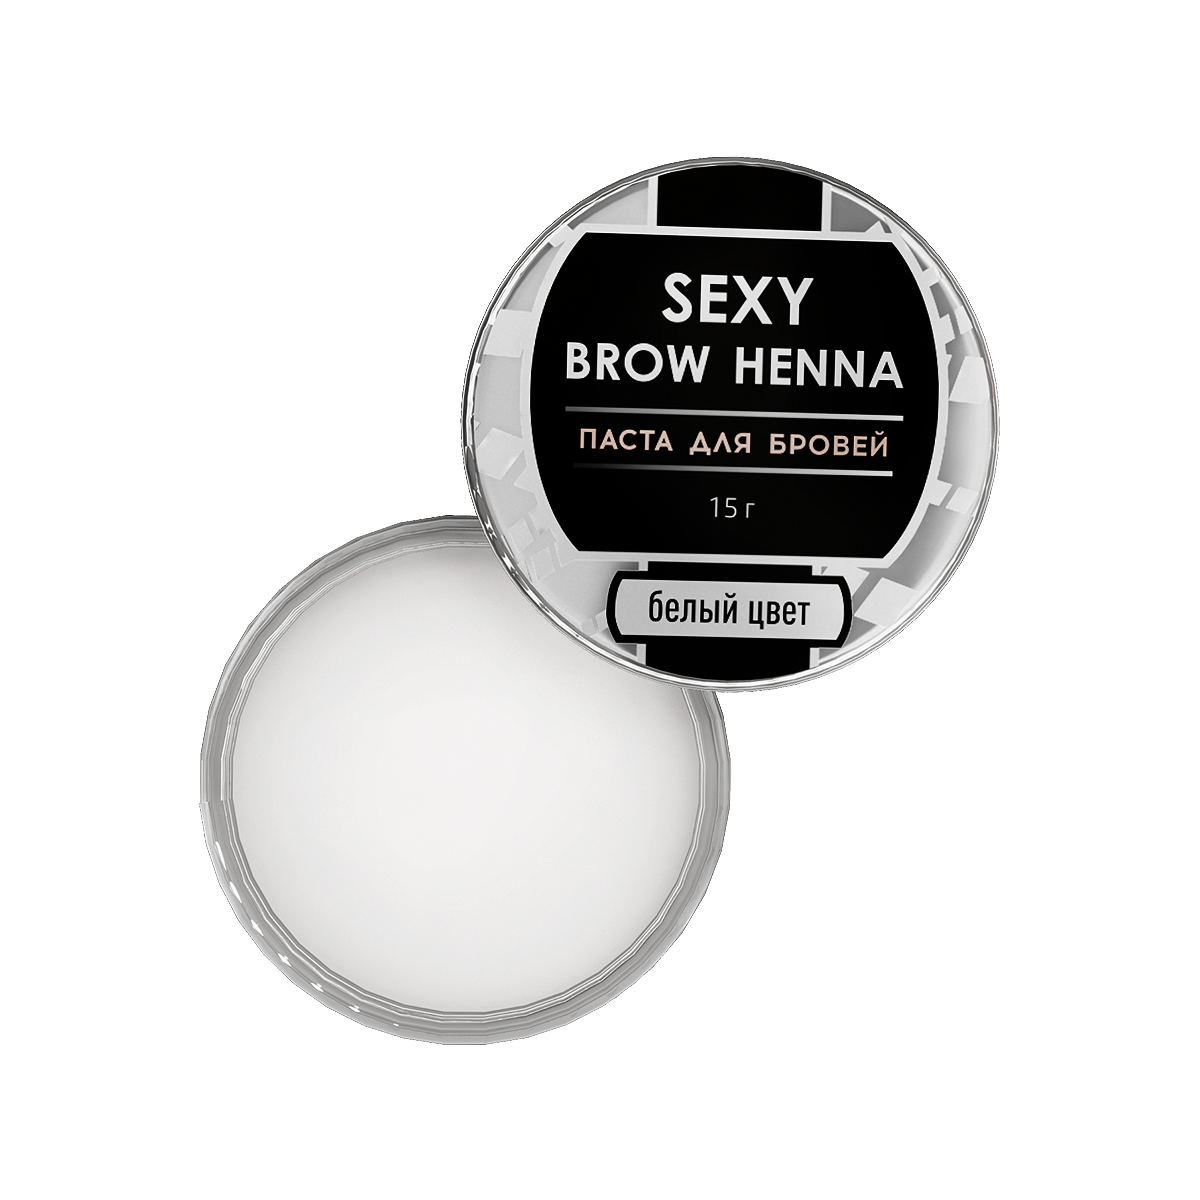 Паста для бровей SEXY BROW HENNA (Секси бров), белый цвет, 15г